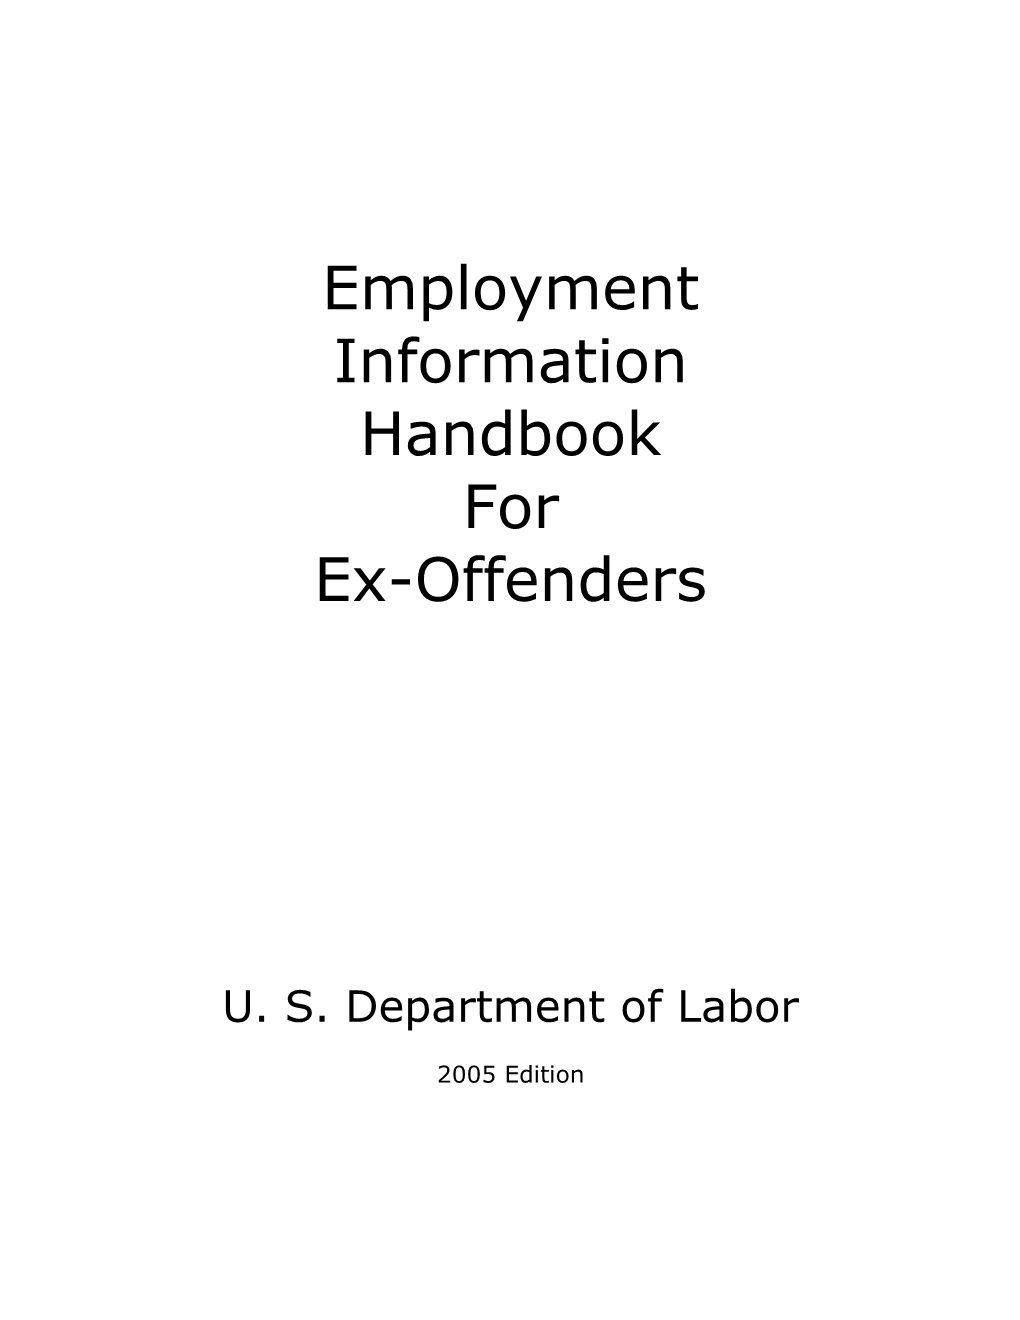 Employment Information Handbook